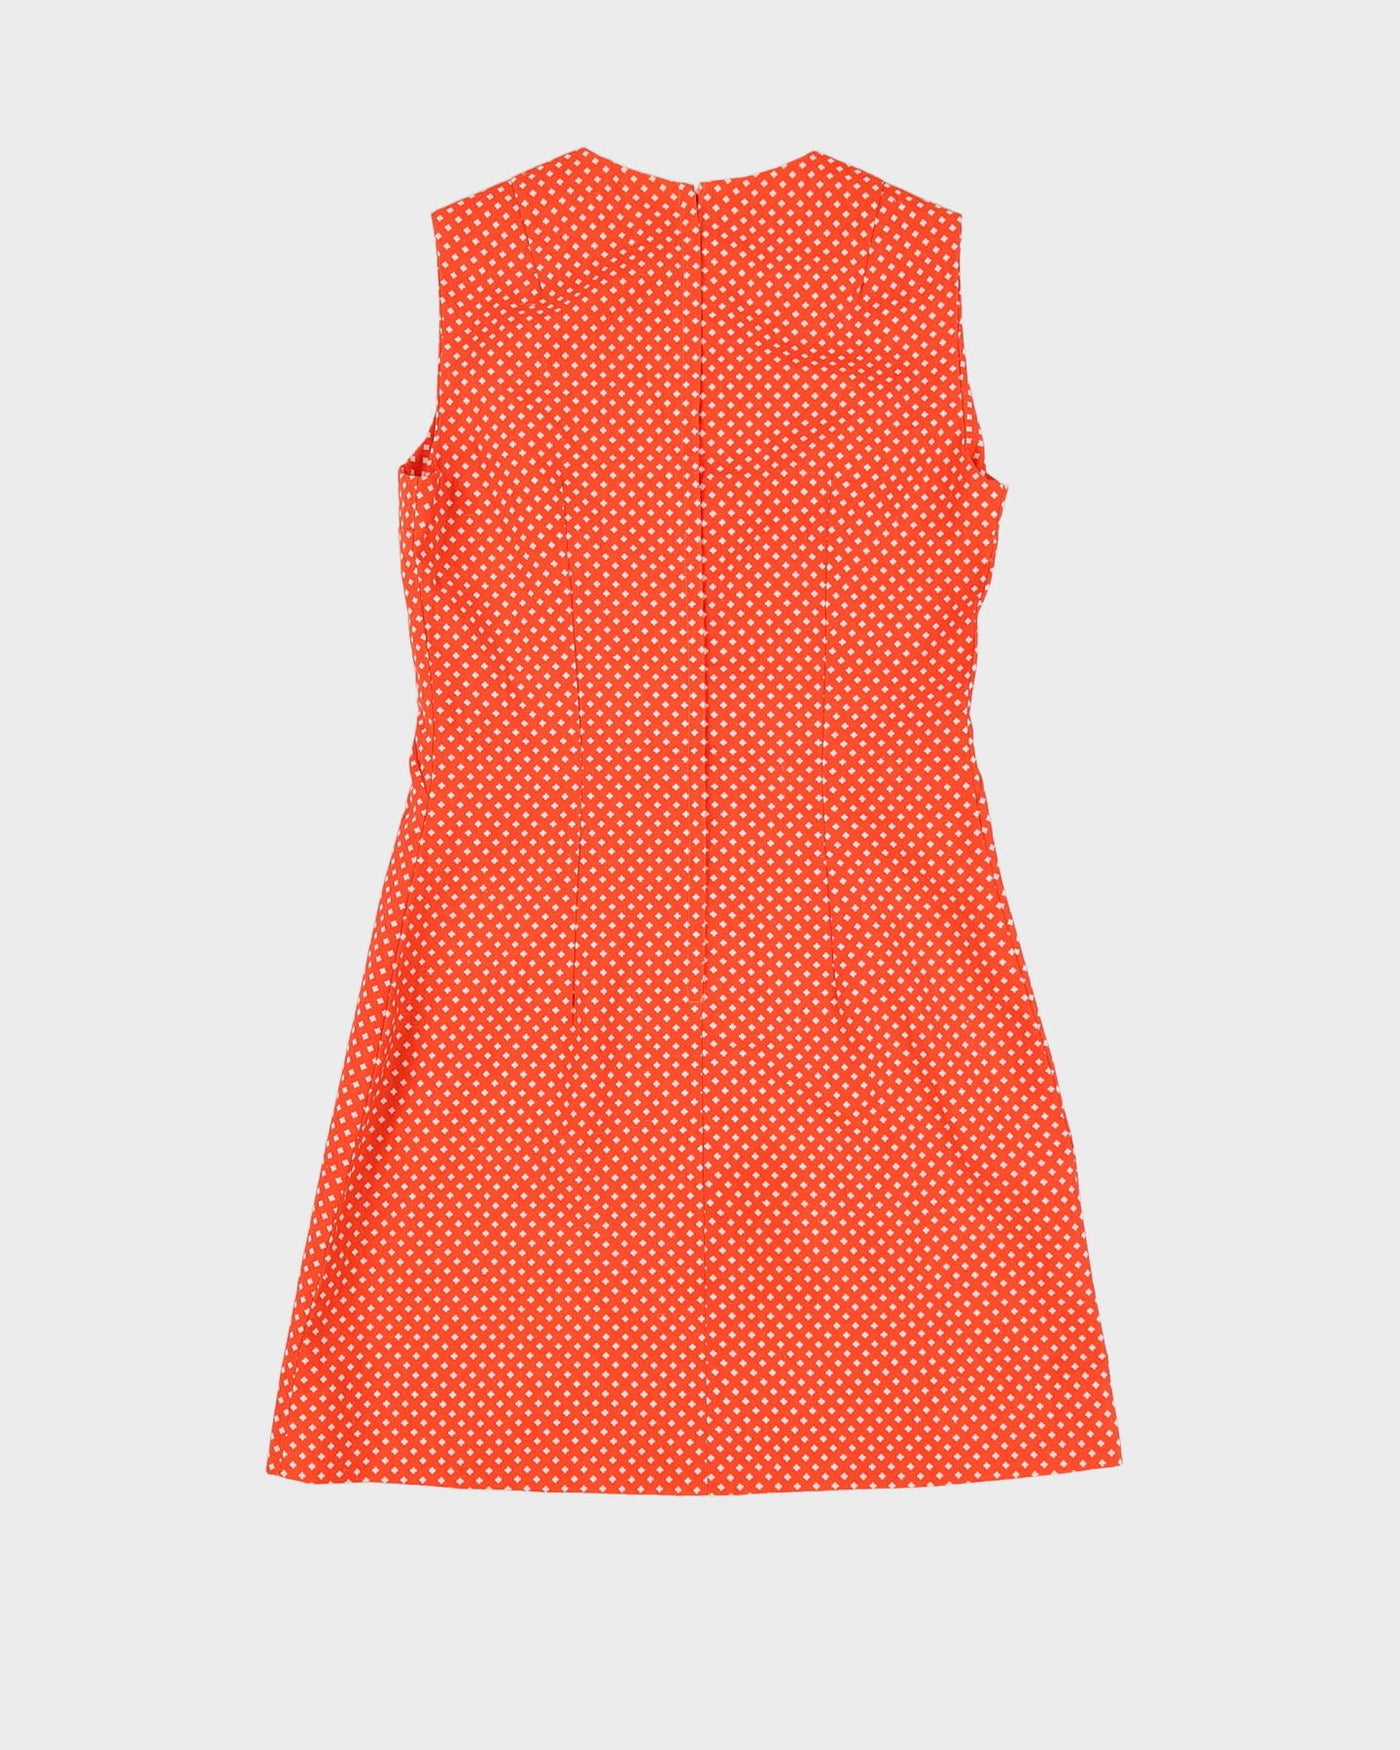 Vintage 1960s Orange Patterned Shift Dress - XS